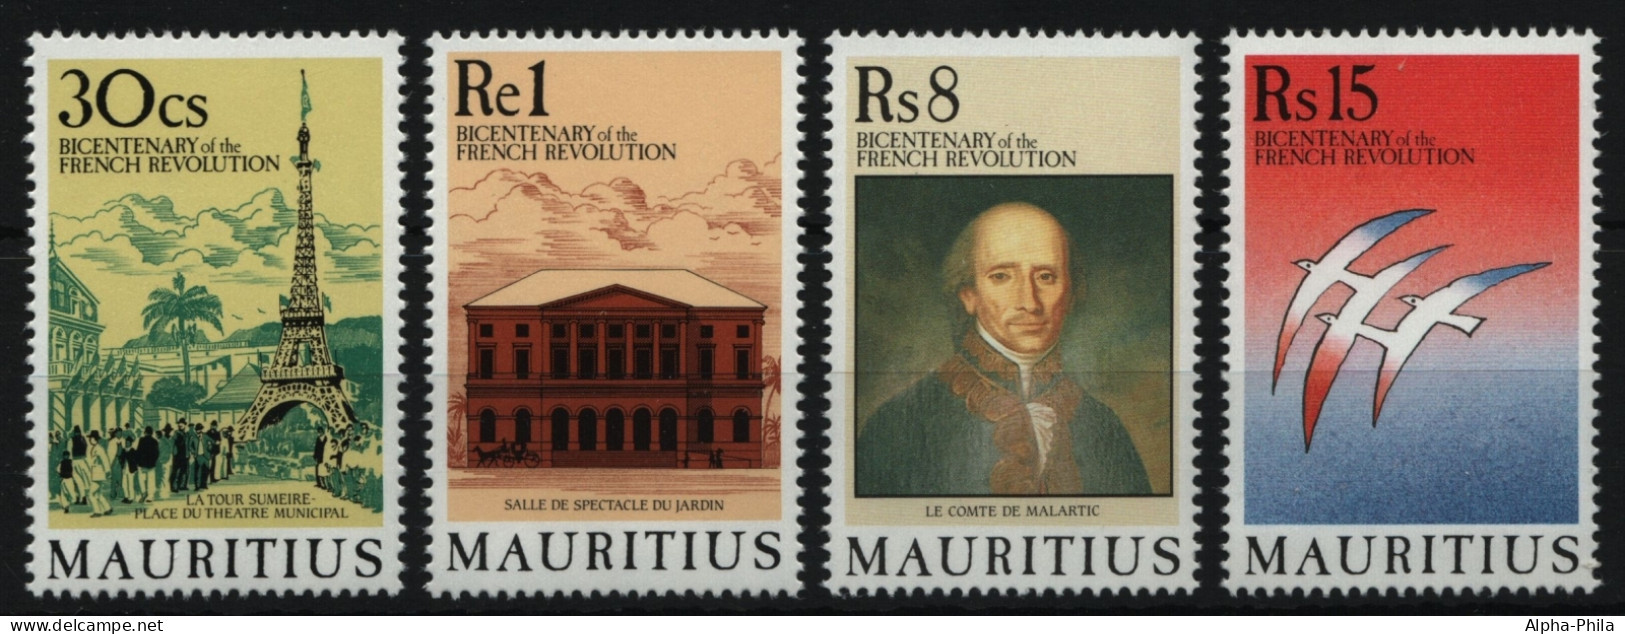 Mauritius 1989 - Mi-Nr. 683-686 ** - MNH - Französische Revolution - Mauritius (1968-...)